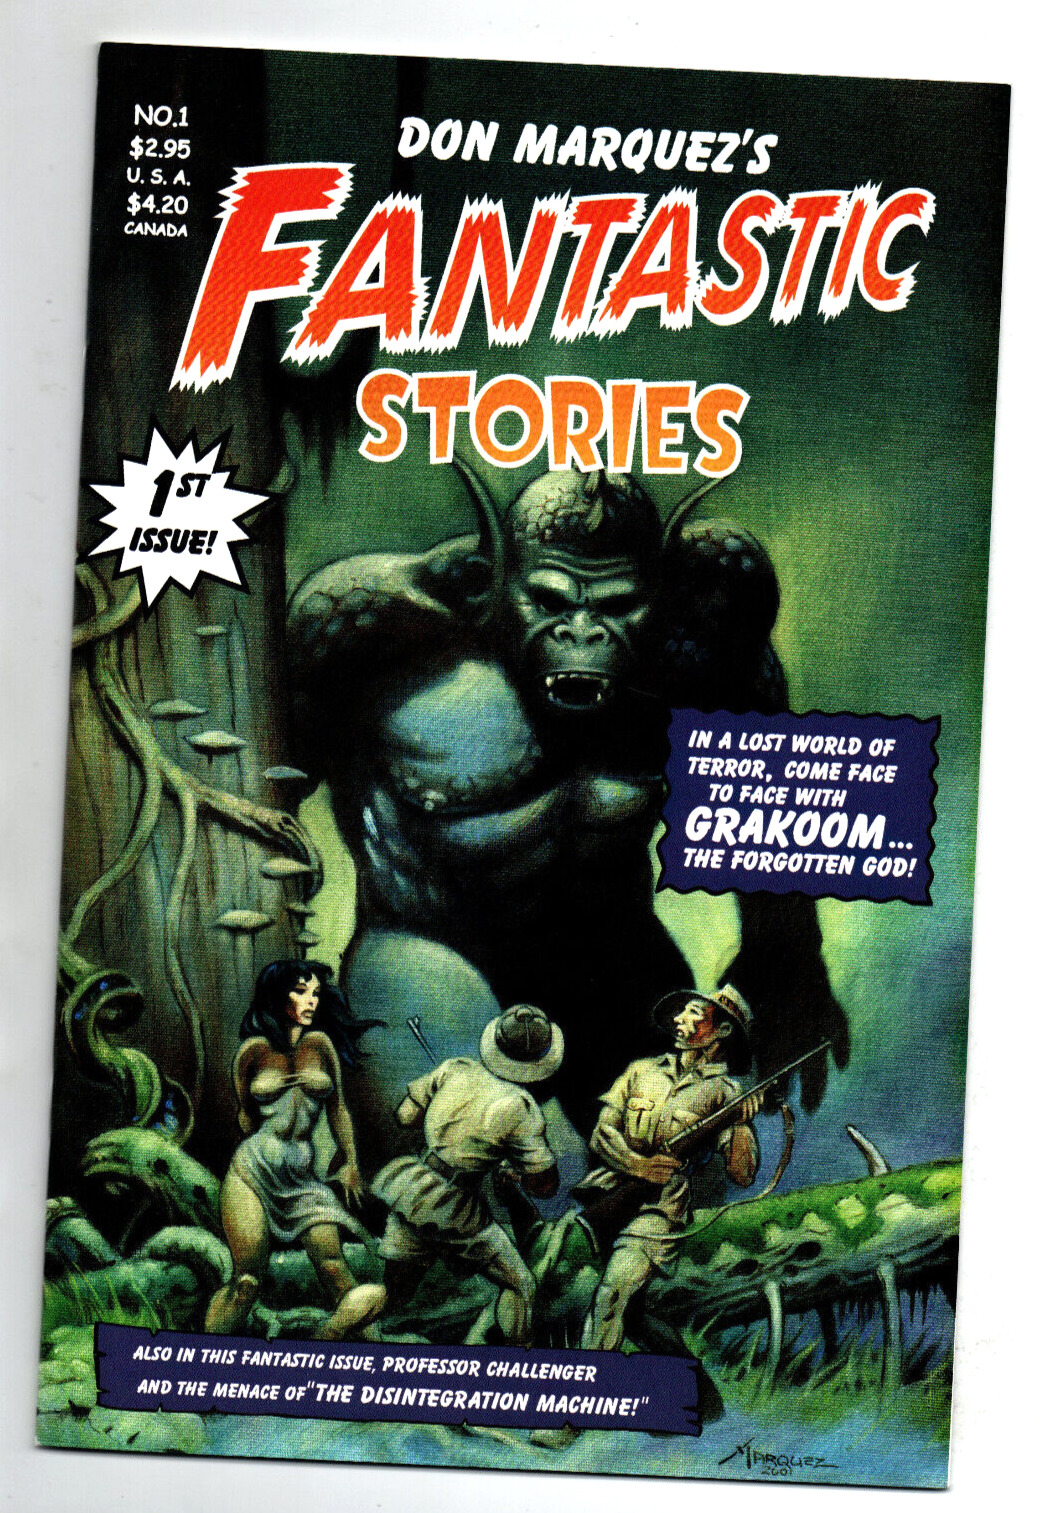 Fantastic Stories #1 2 & 3 Complete Set -Don Marquez-Basement Comics - 2001 - NM